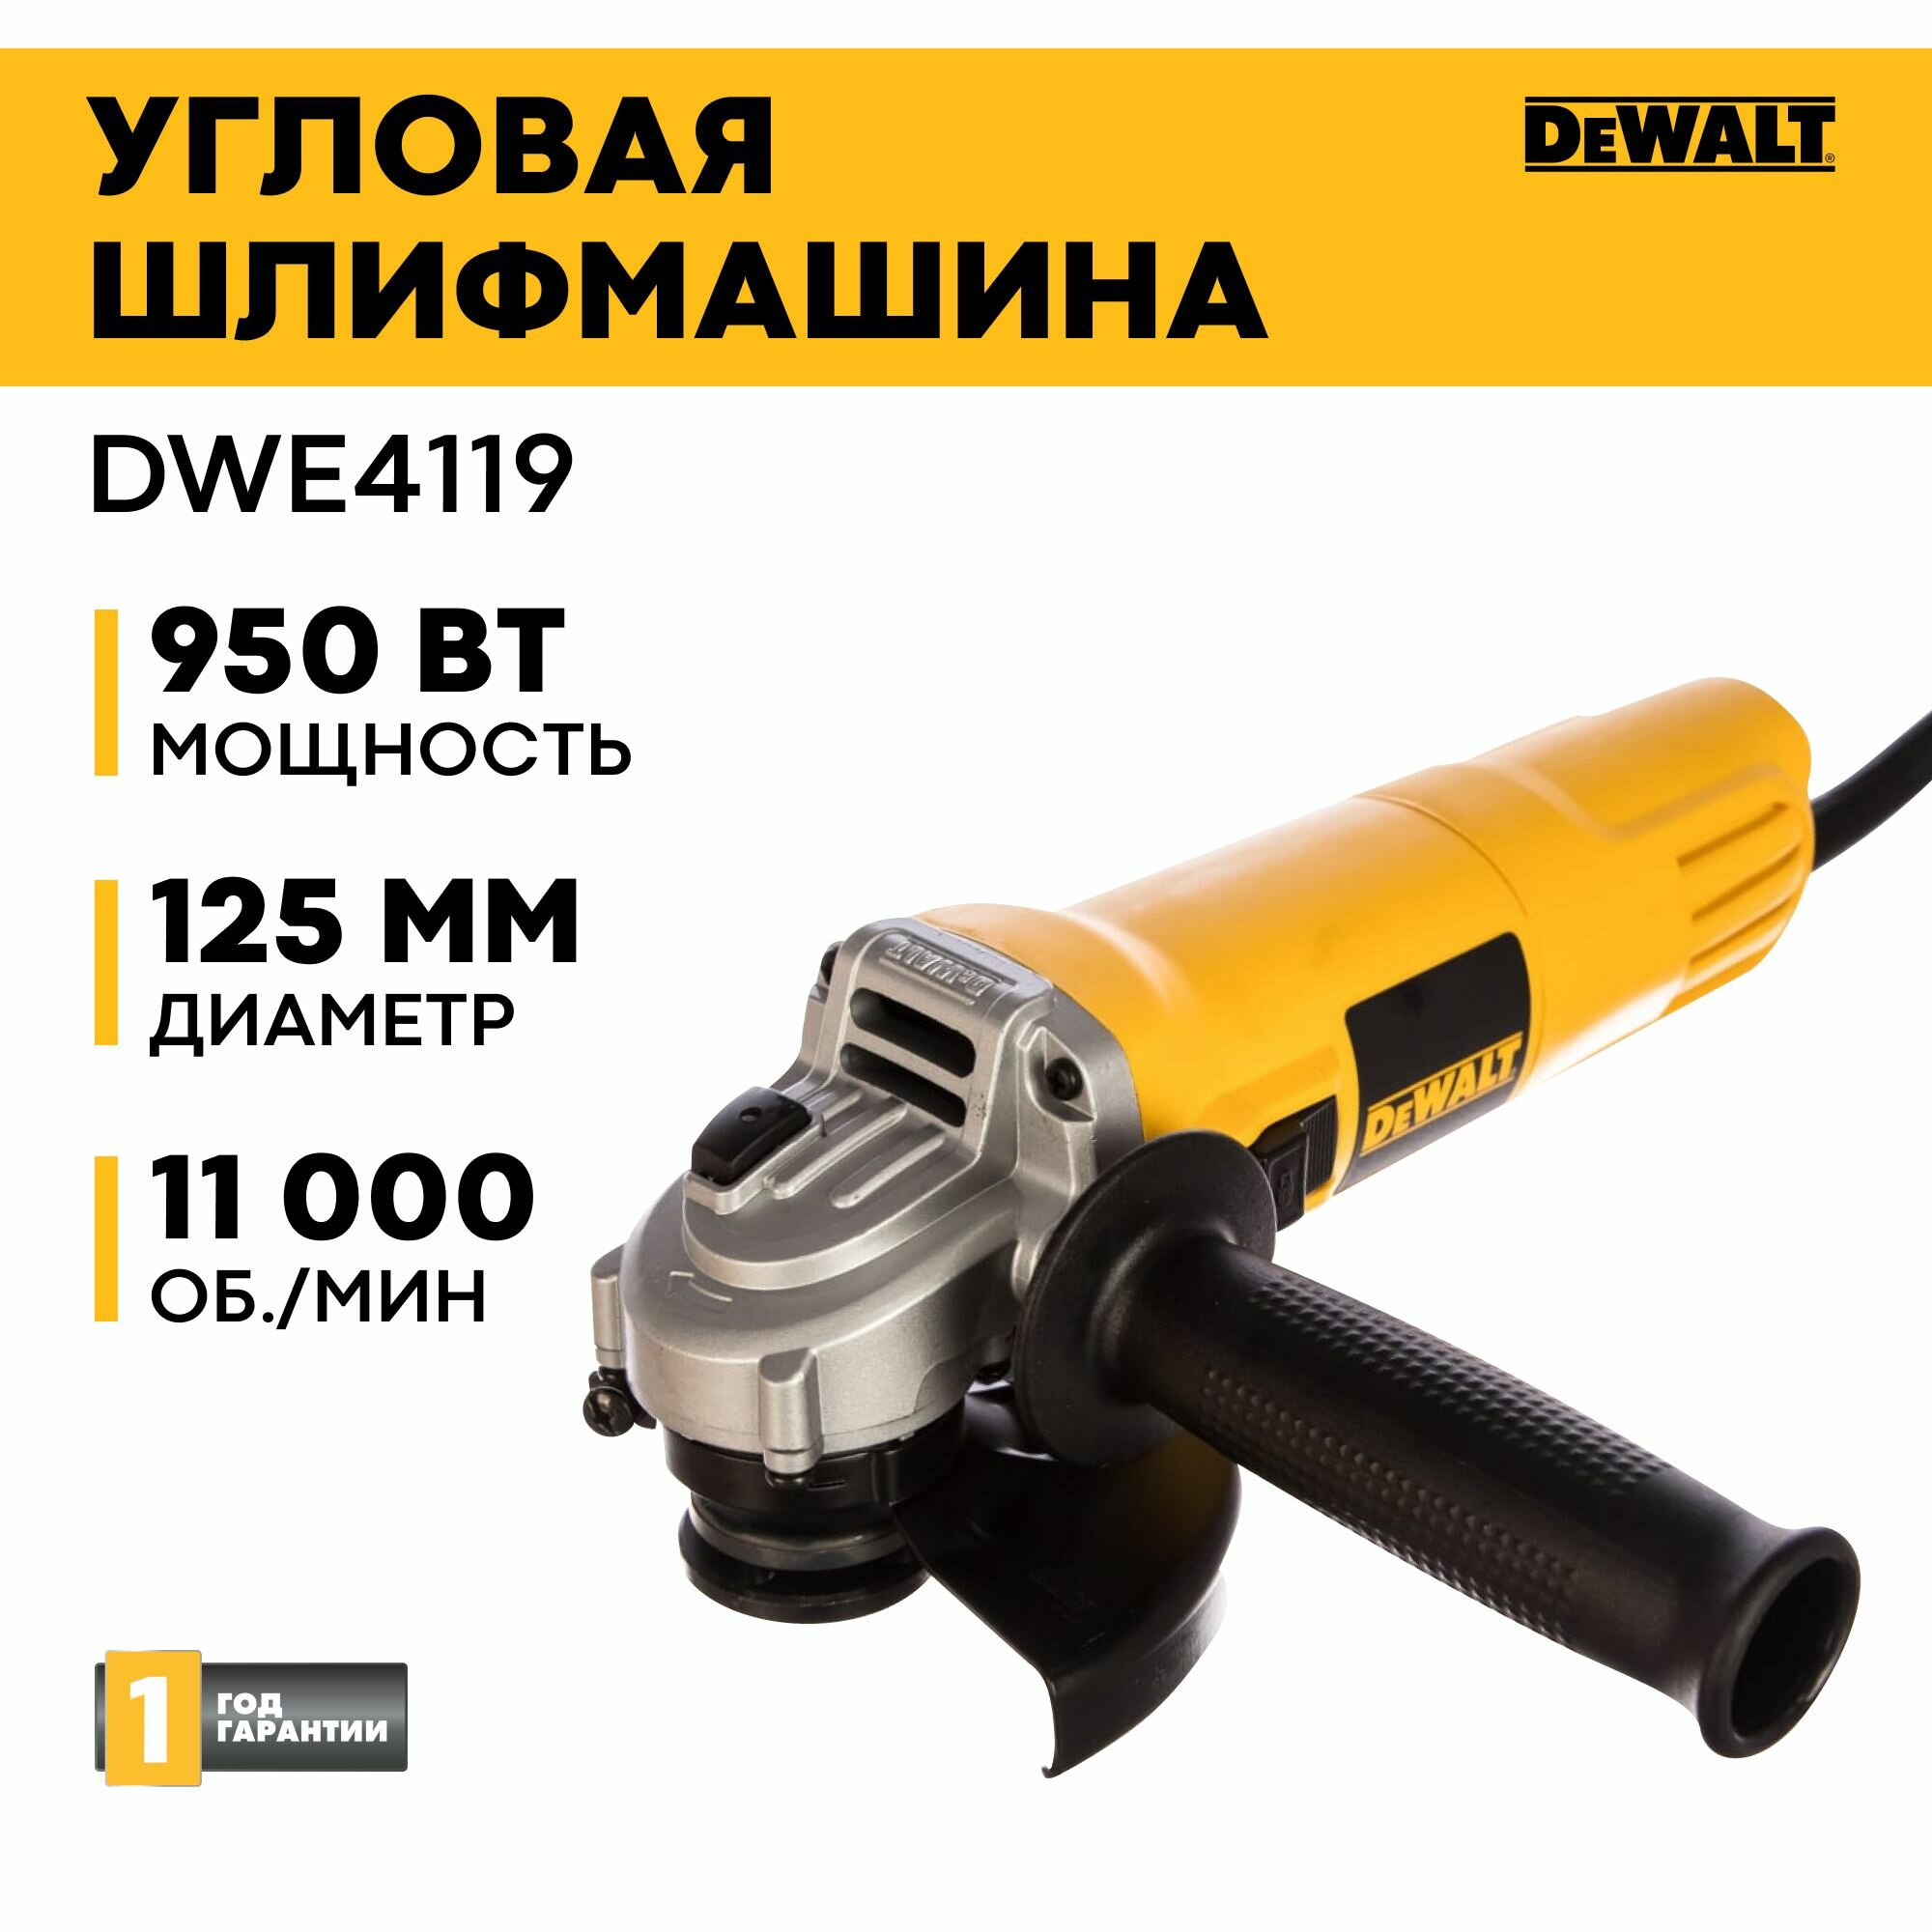 Угловая шлифмашина с регулировкой оборотов DEWALT DWE4119, 950 Вт, 125 мм